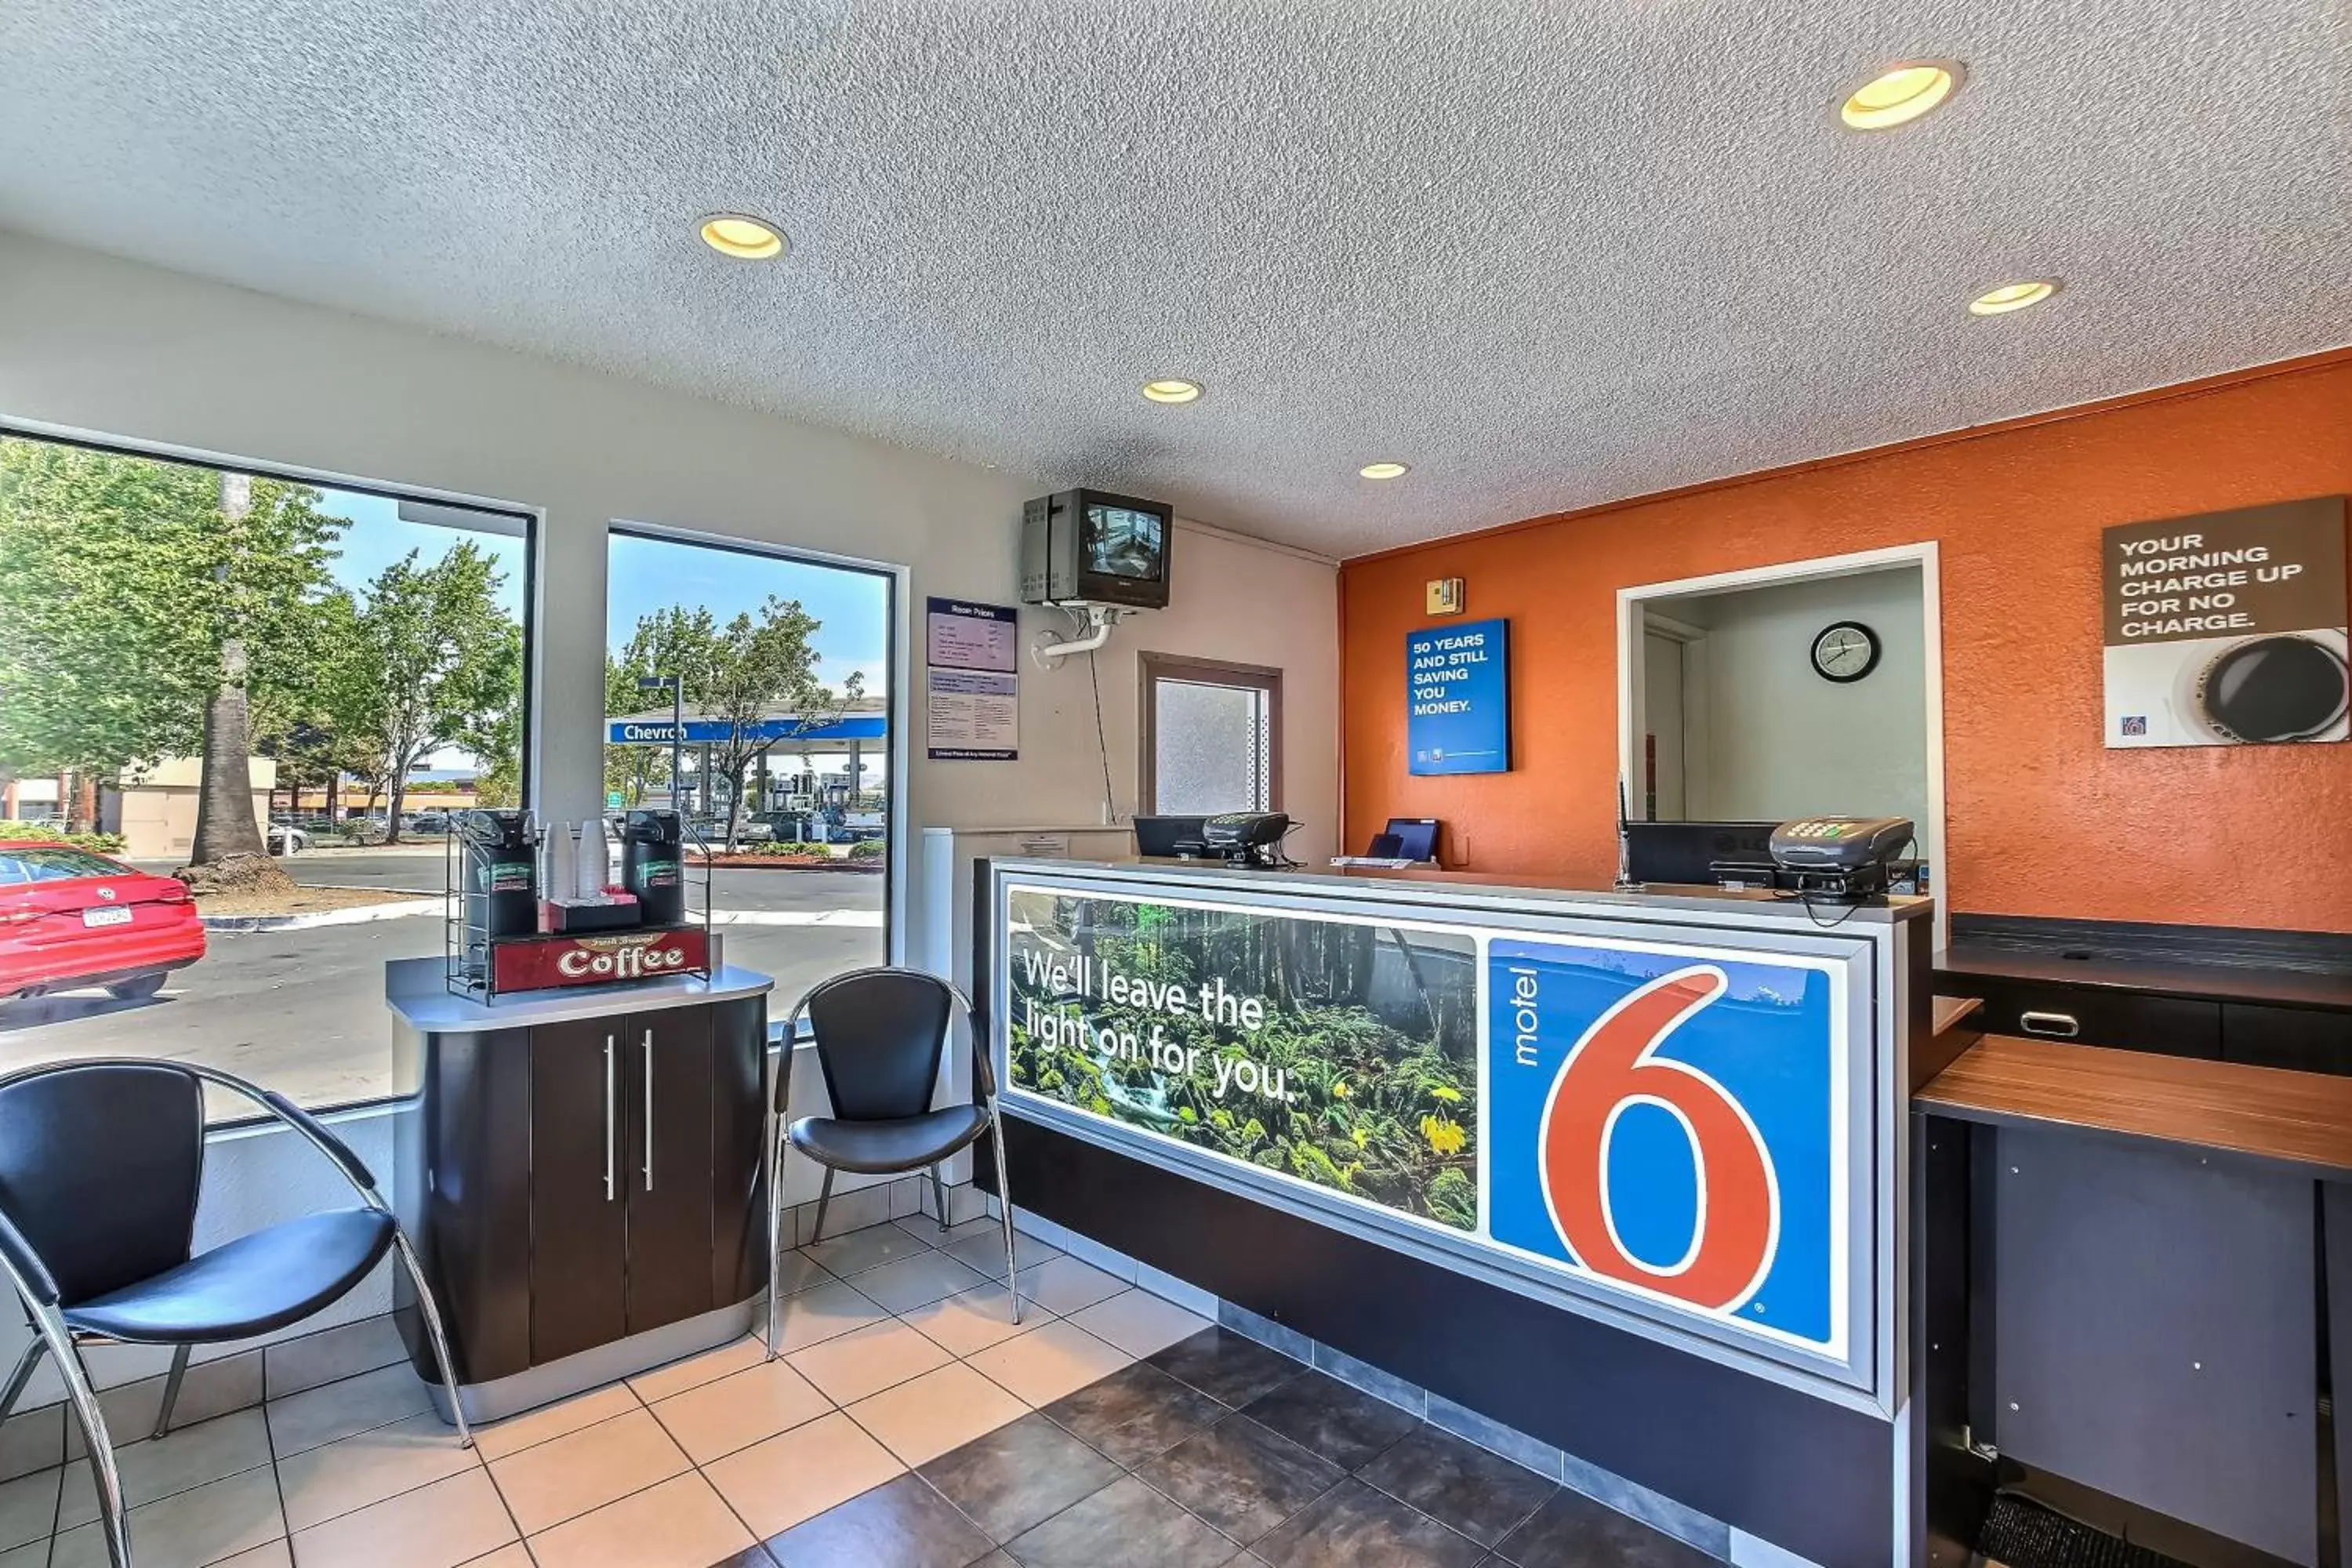 Lobby or reception in Motel 6-Pleasanton, CA